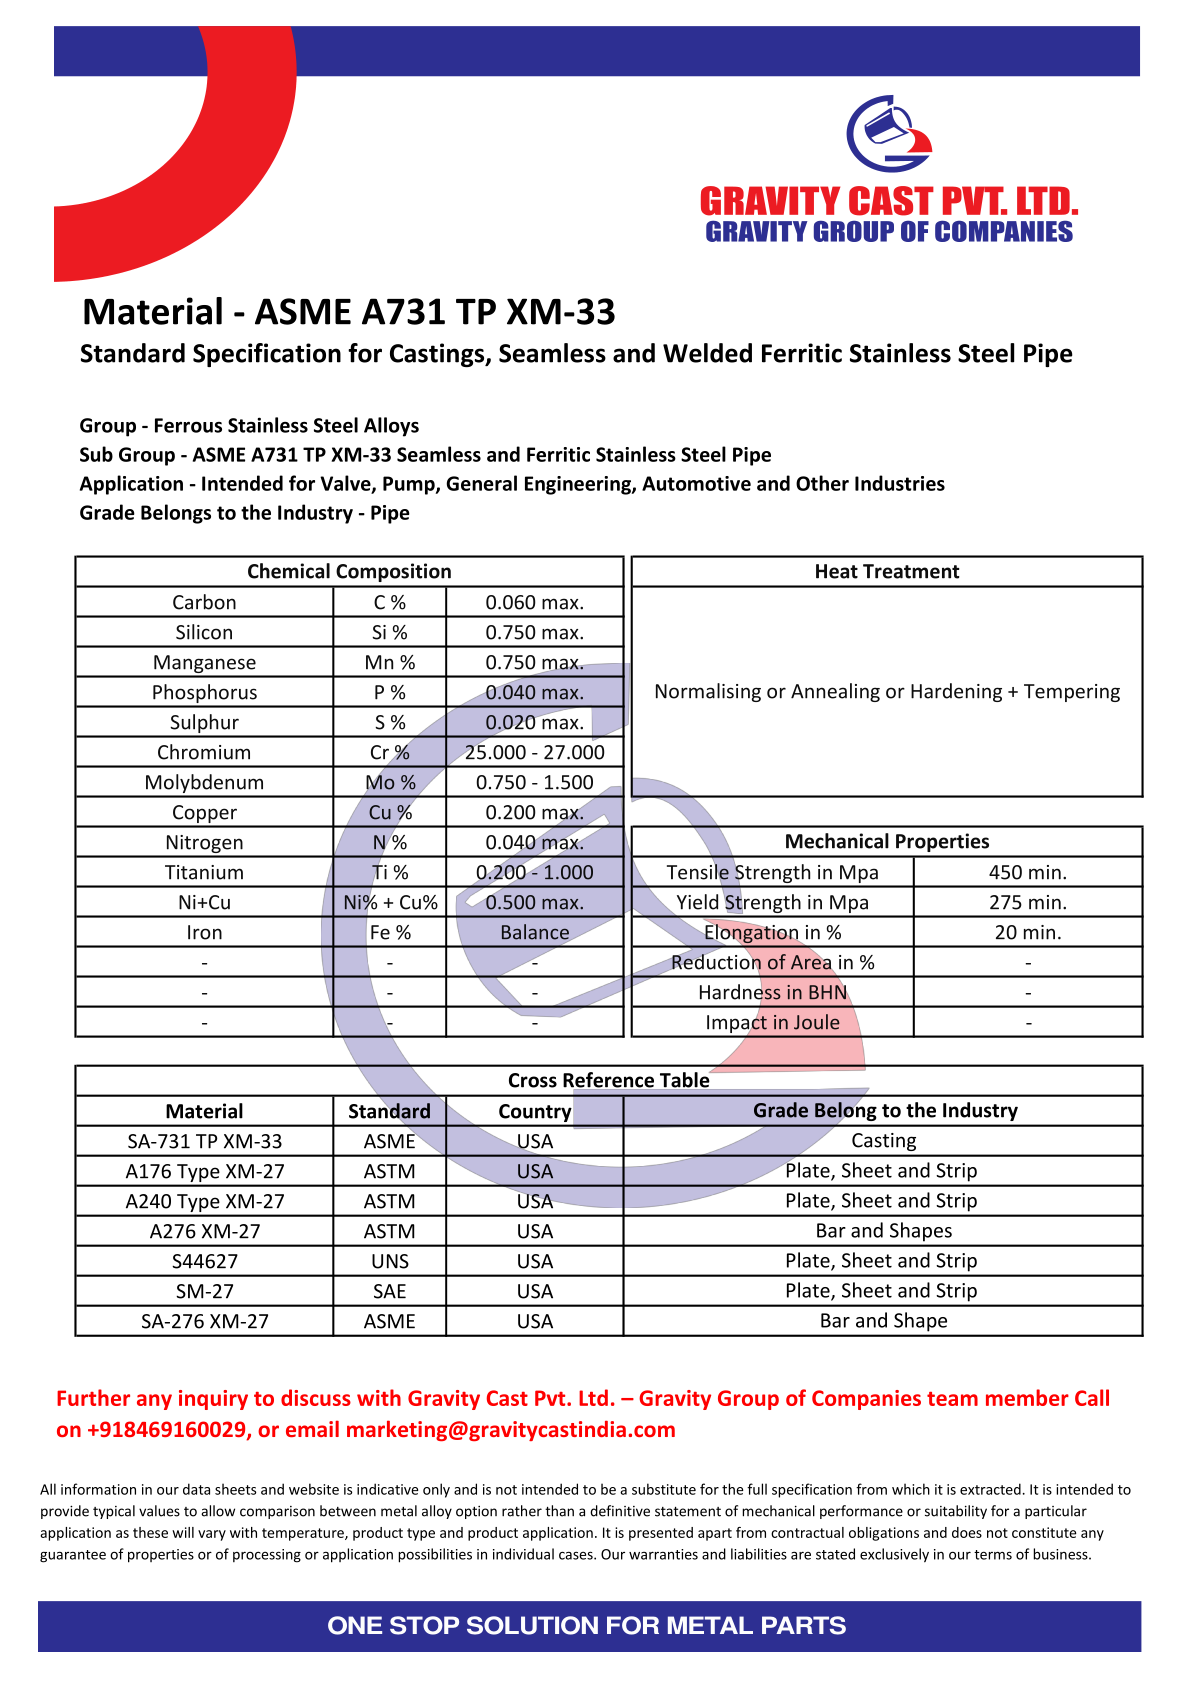 ASME A731 TP XM-33.pdf